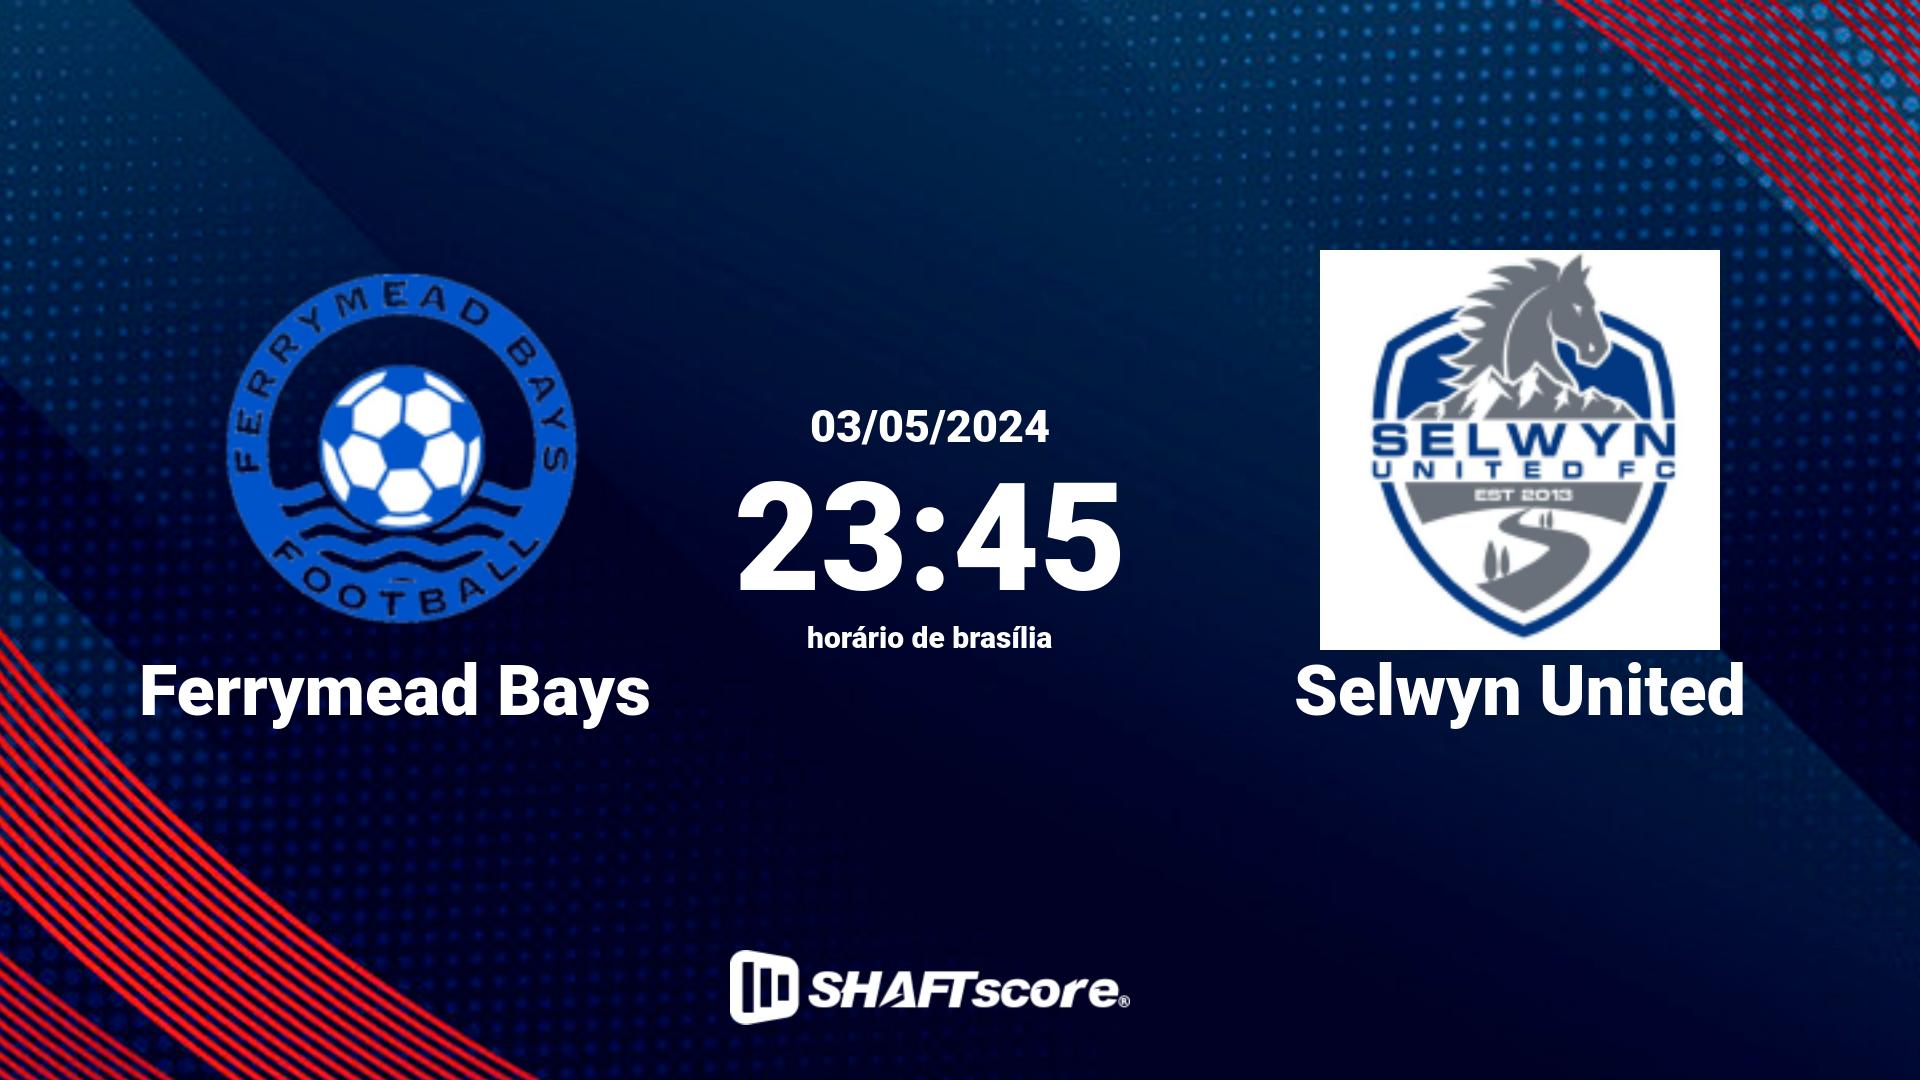 Estatísticas do jogo Ferrymead Bays vs Selwyn United 03.05 23:45